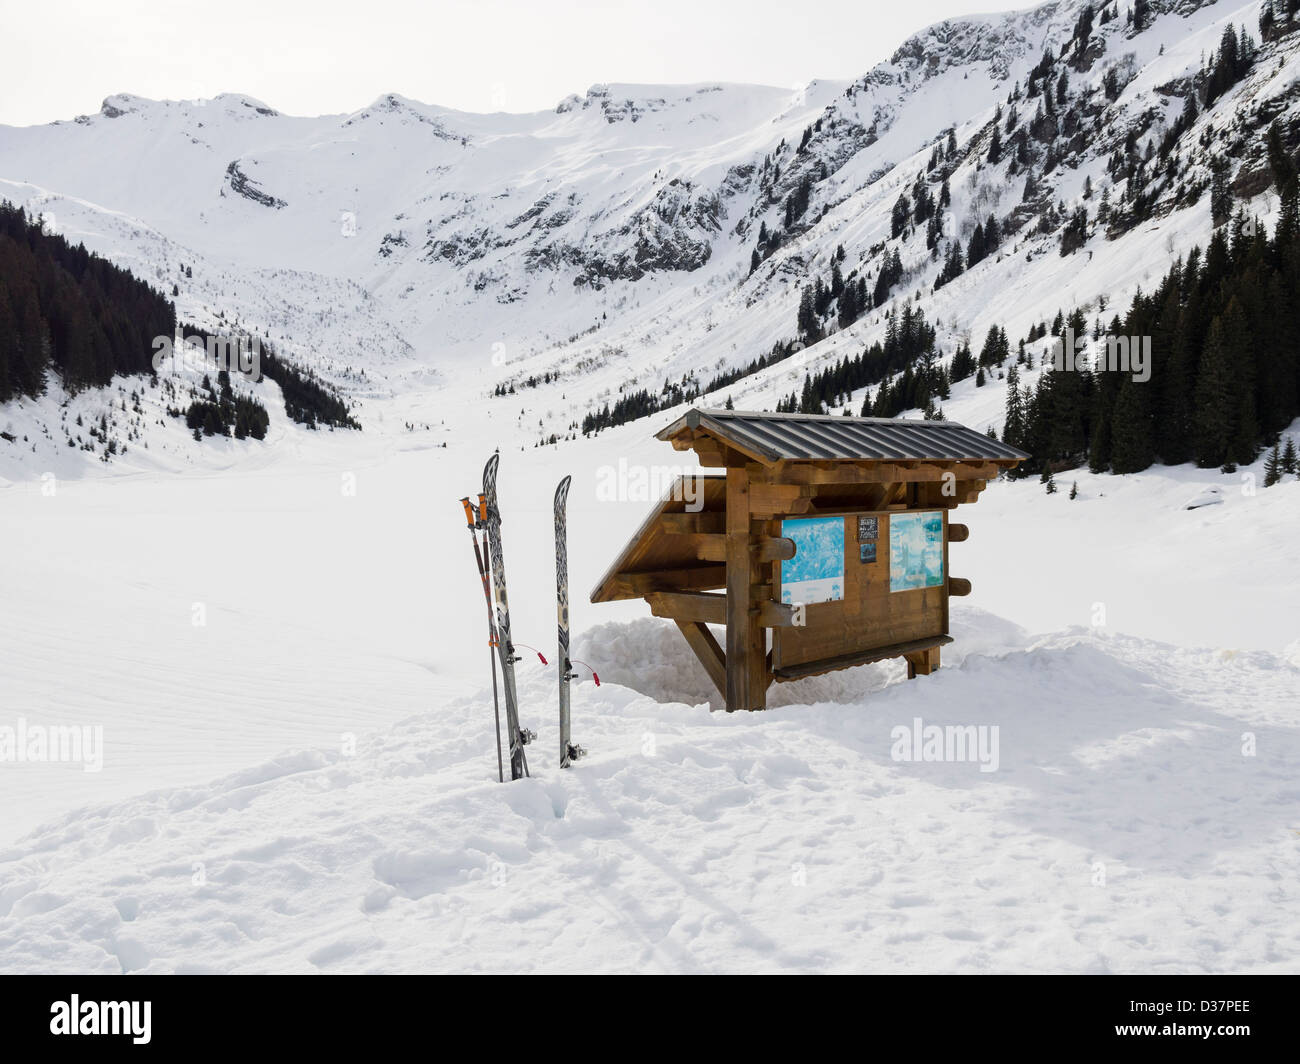 Esquís y junta local de información junto al Lac de Gers lago congelado en Le Grand Massif zona de esquí de los Alpes franceses, cerca de Samoens, France Foto de stock